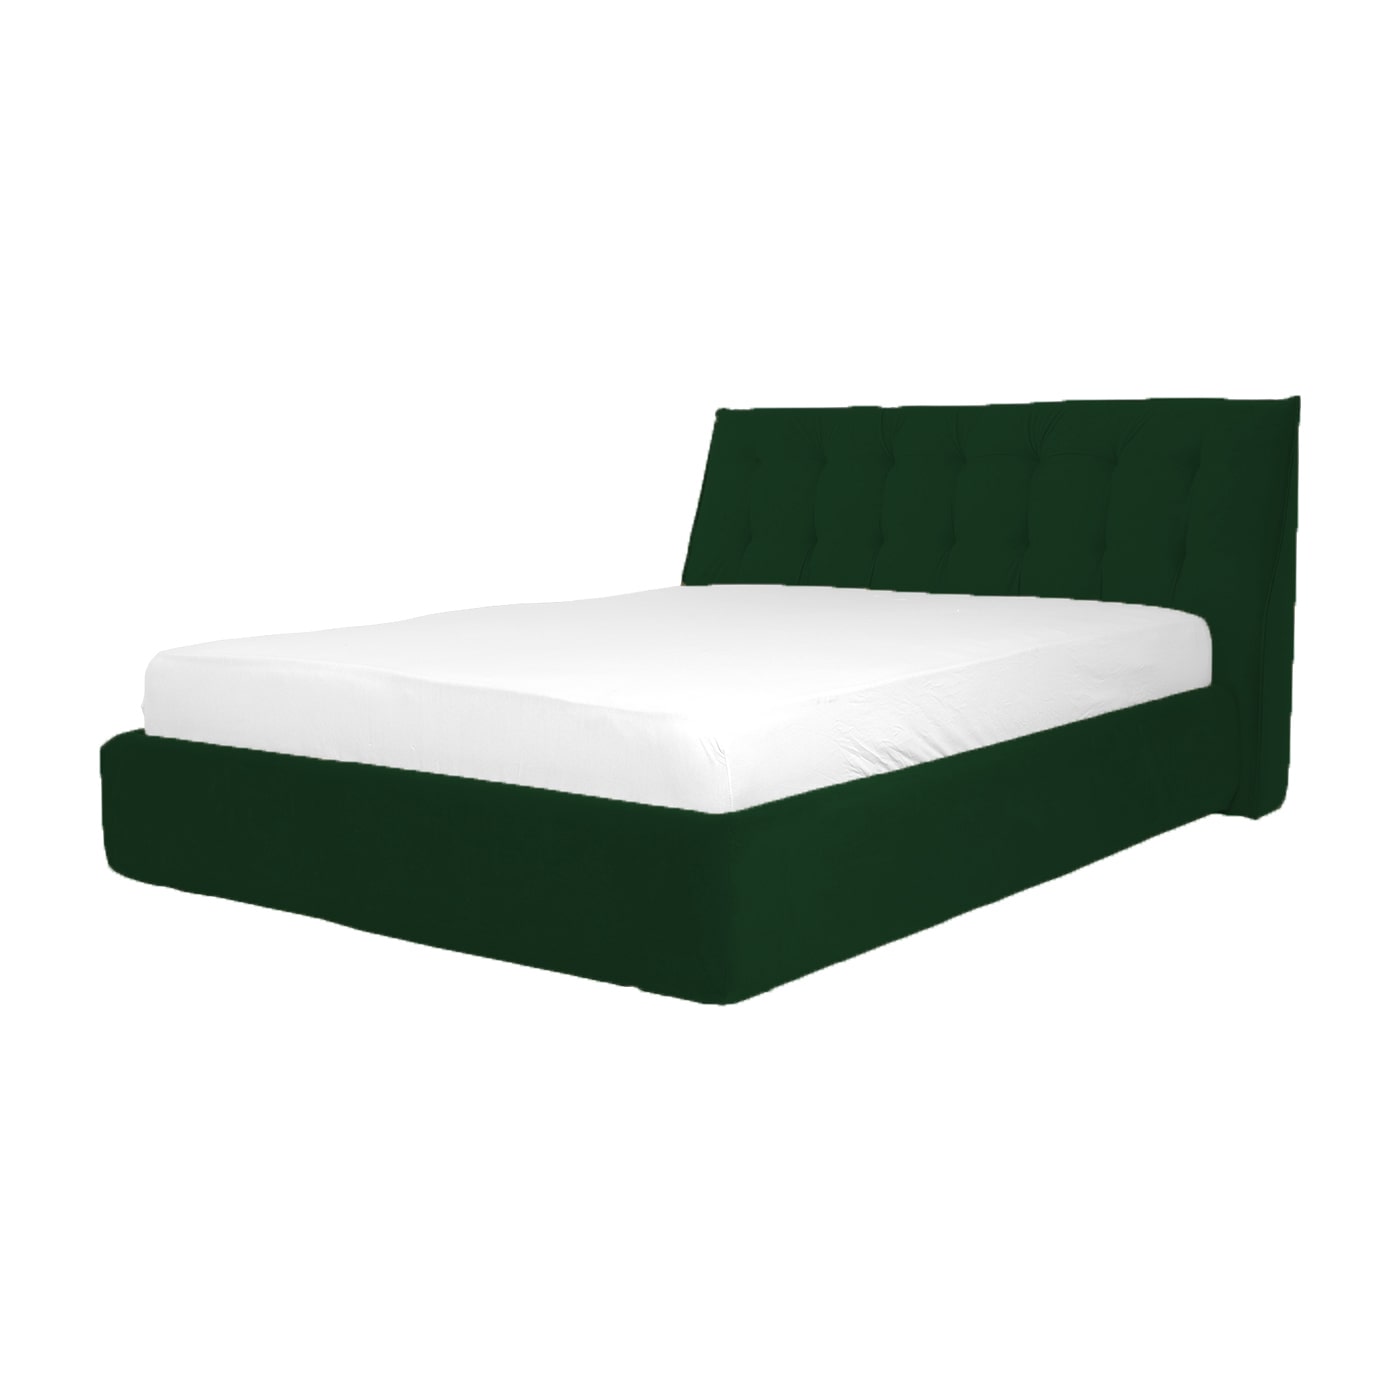 RIMINI, pat tapitat verde inchis cu somiera si lada de depozitare rabadabila pentru dormitor, 160x200